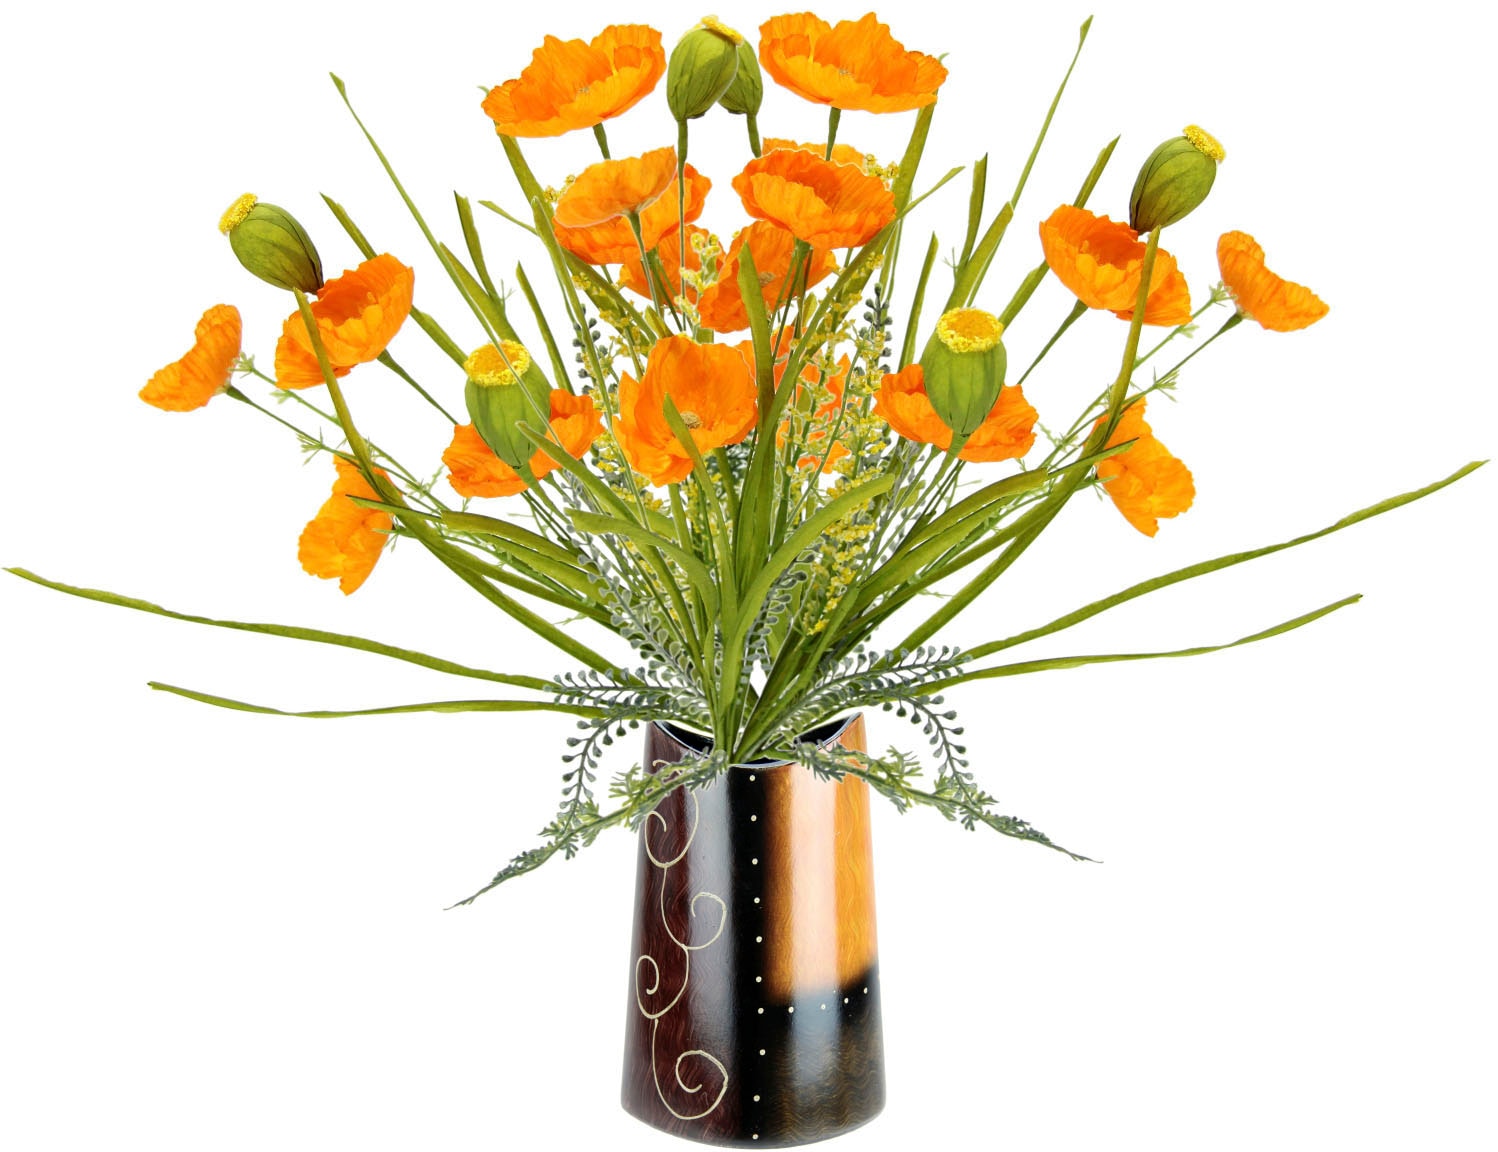 Seidenblumenstrauß Mohnblume Keramik«, Strauß Bouquet Blumen bestellen in Mohnbusch bequem »Mohnblumenbusch Vase Kunstblume Mohn aus I.GE.A.